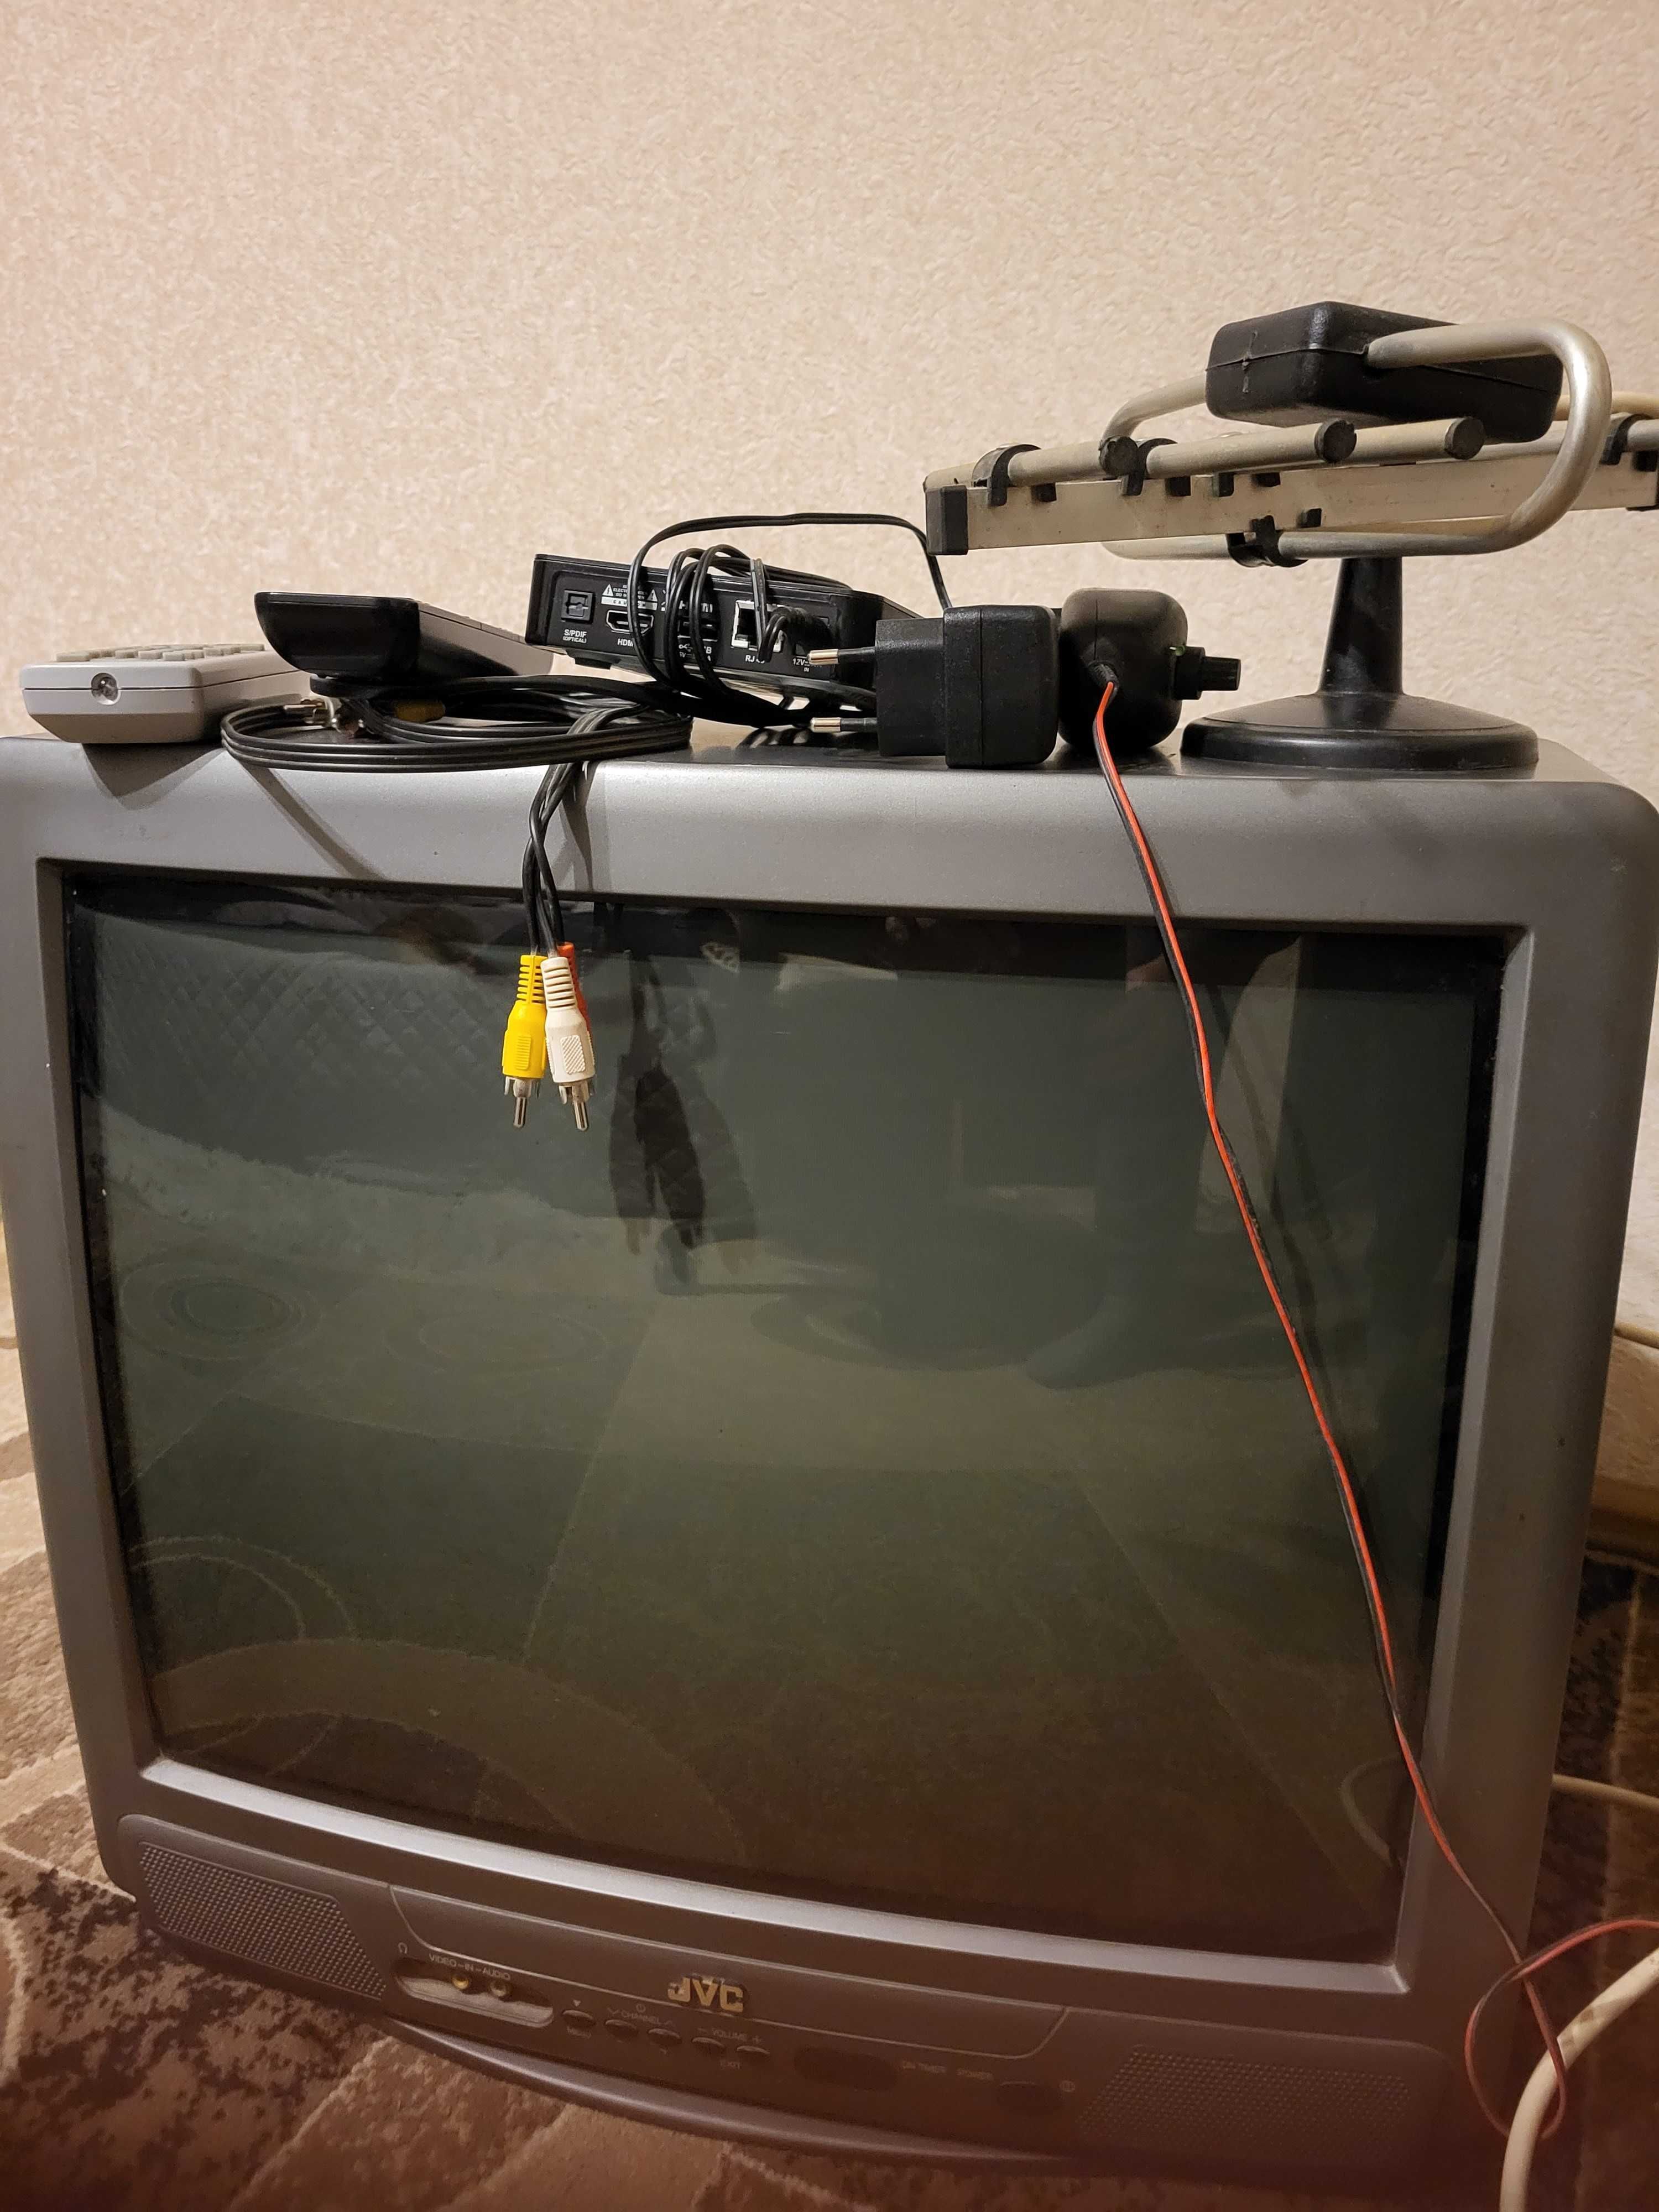 Телевизор  JVC диагональ  52  см  ( 20 дюймов)  с  антеной  и тюнером